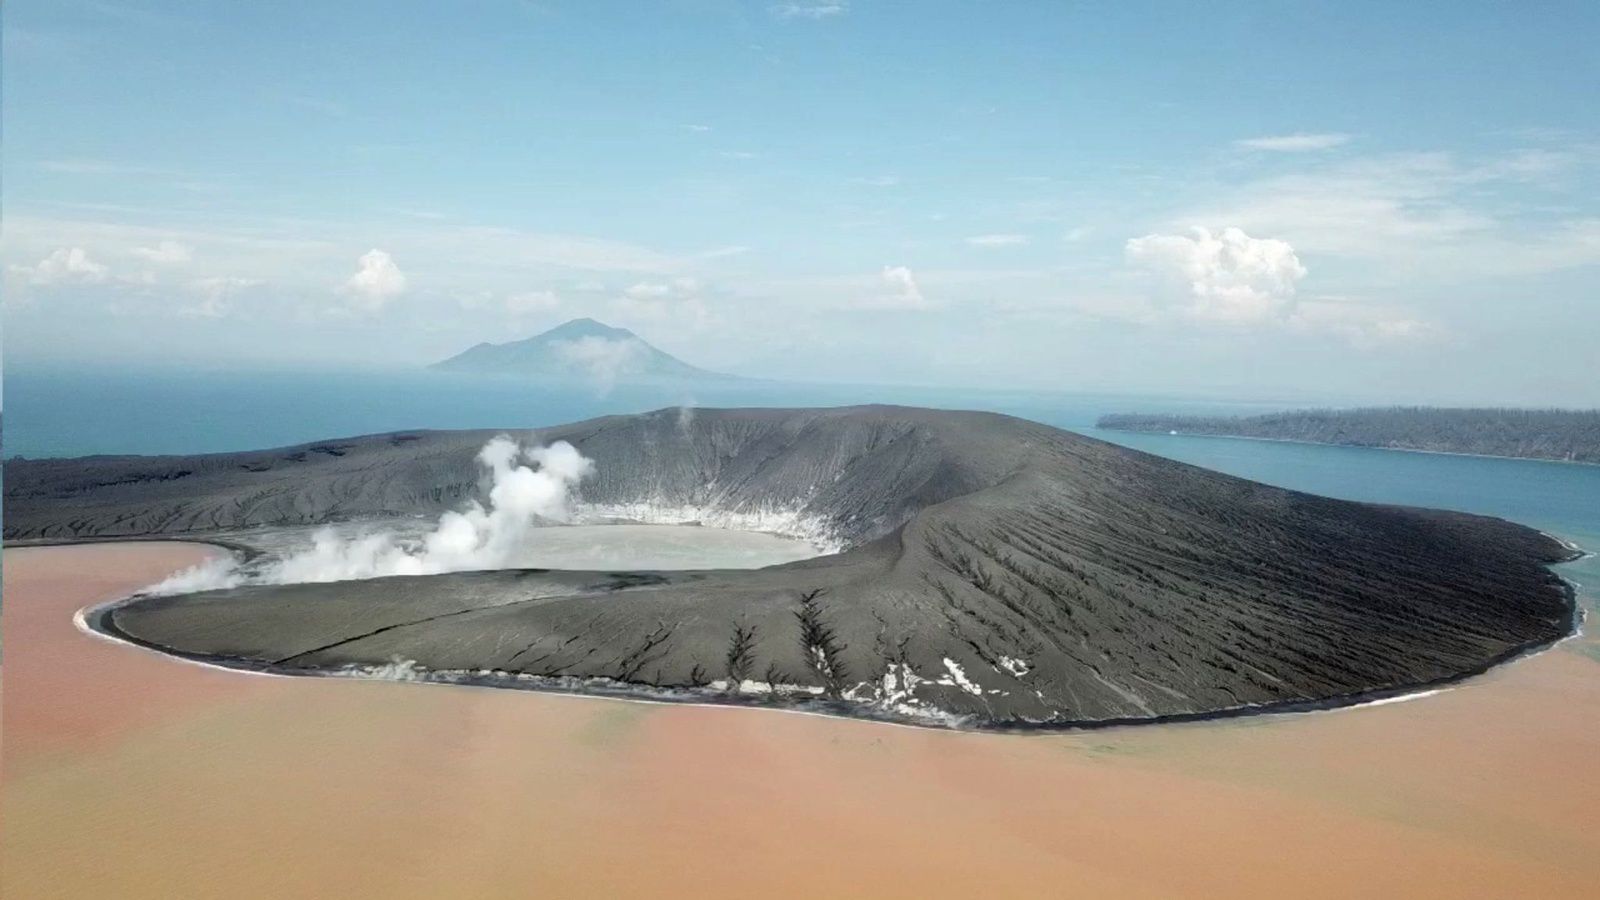 L'Anak Krakatau le 10.01.2019 dans sa configuration actuelle toute provisoire - photo James Reynolds / EarthUncut Tv